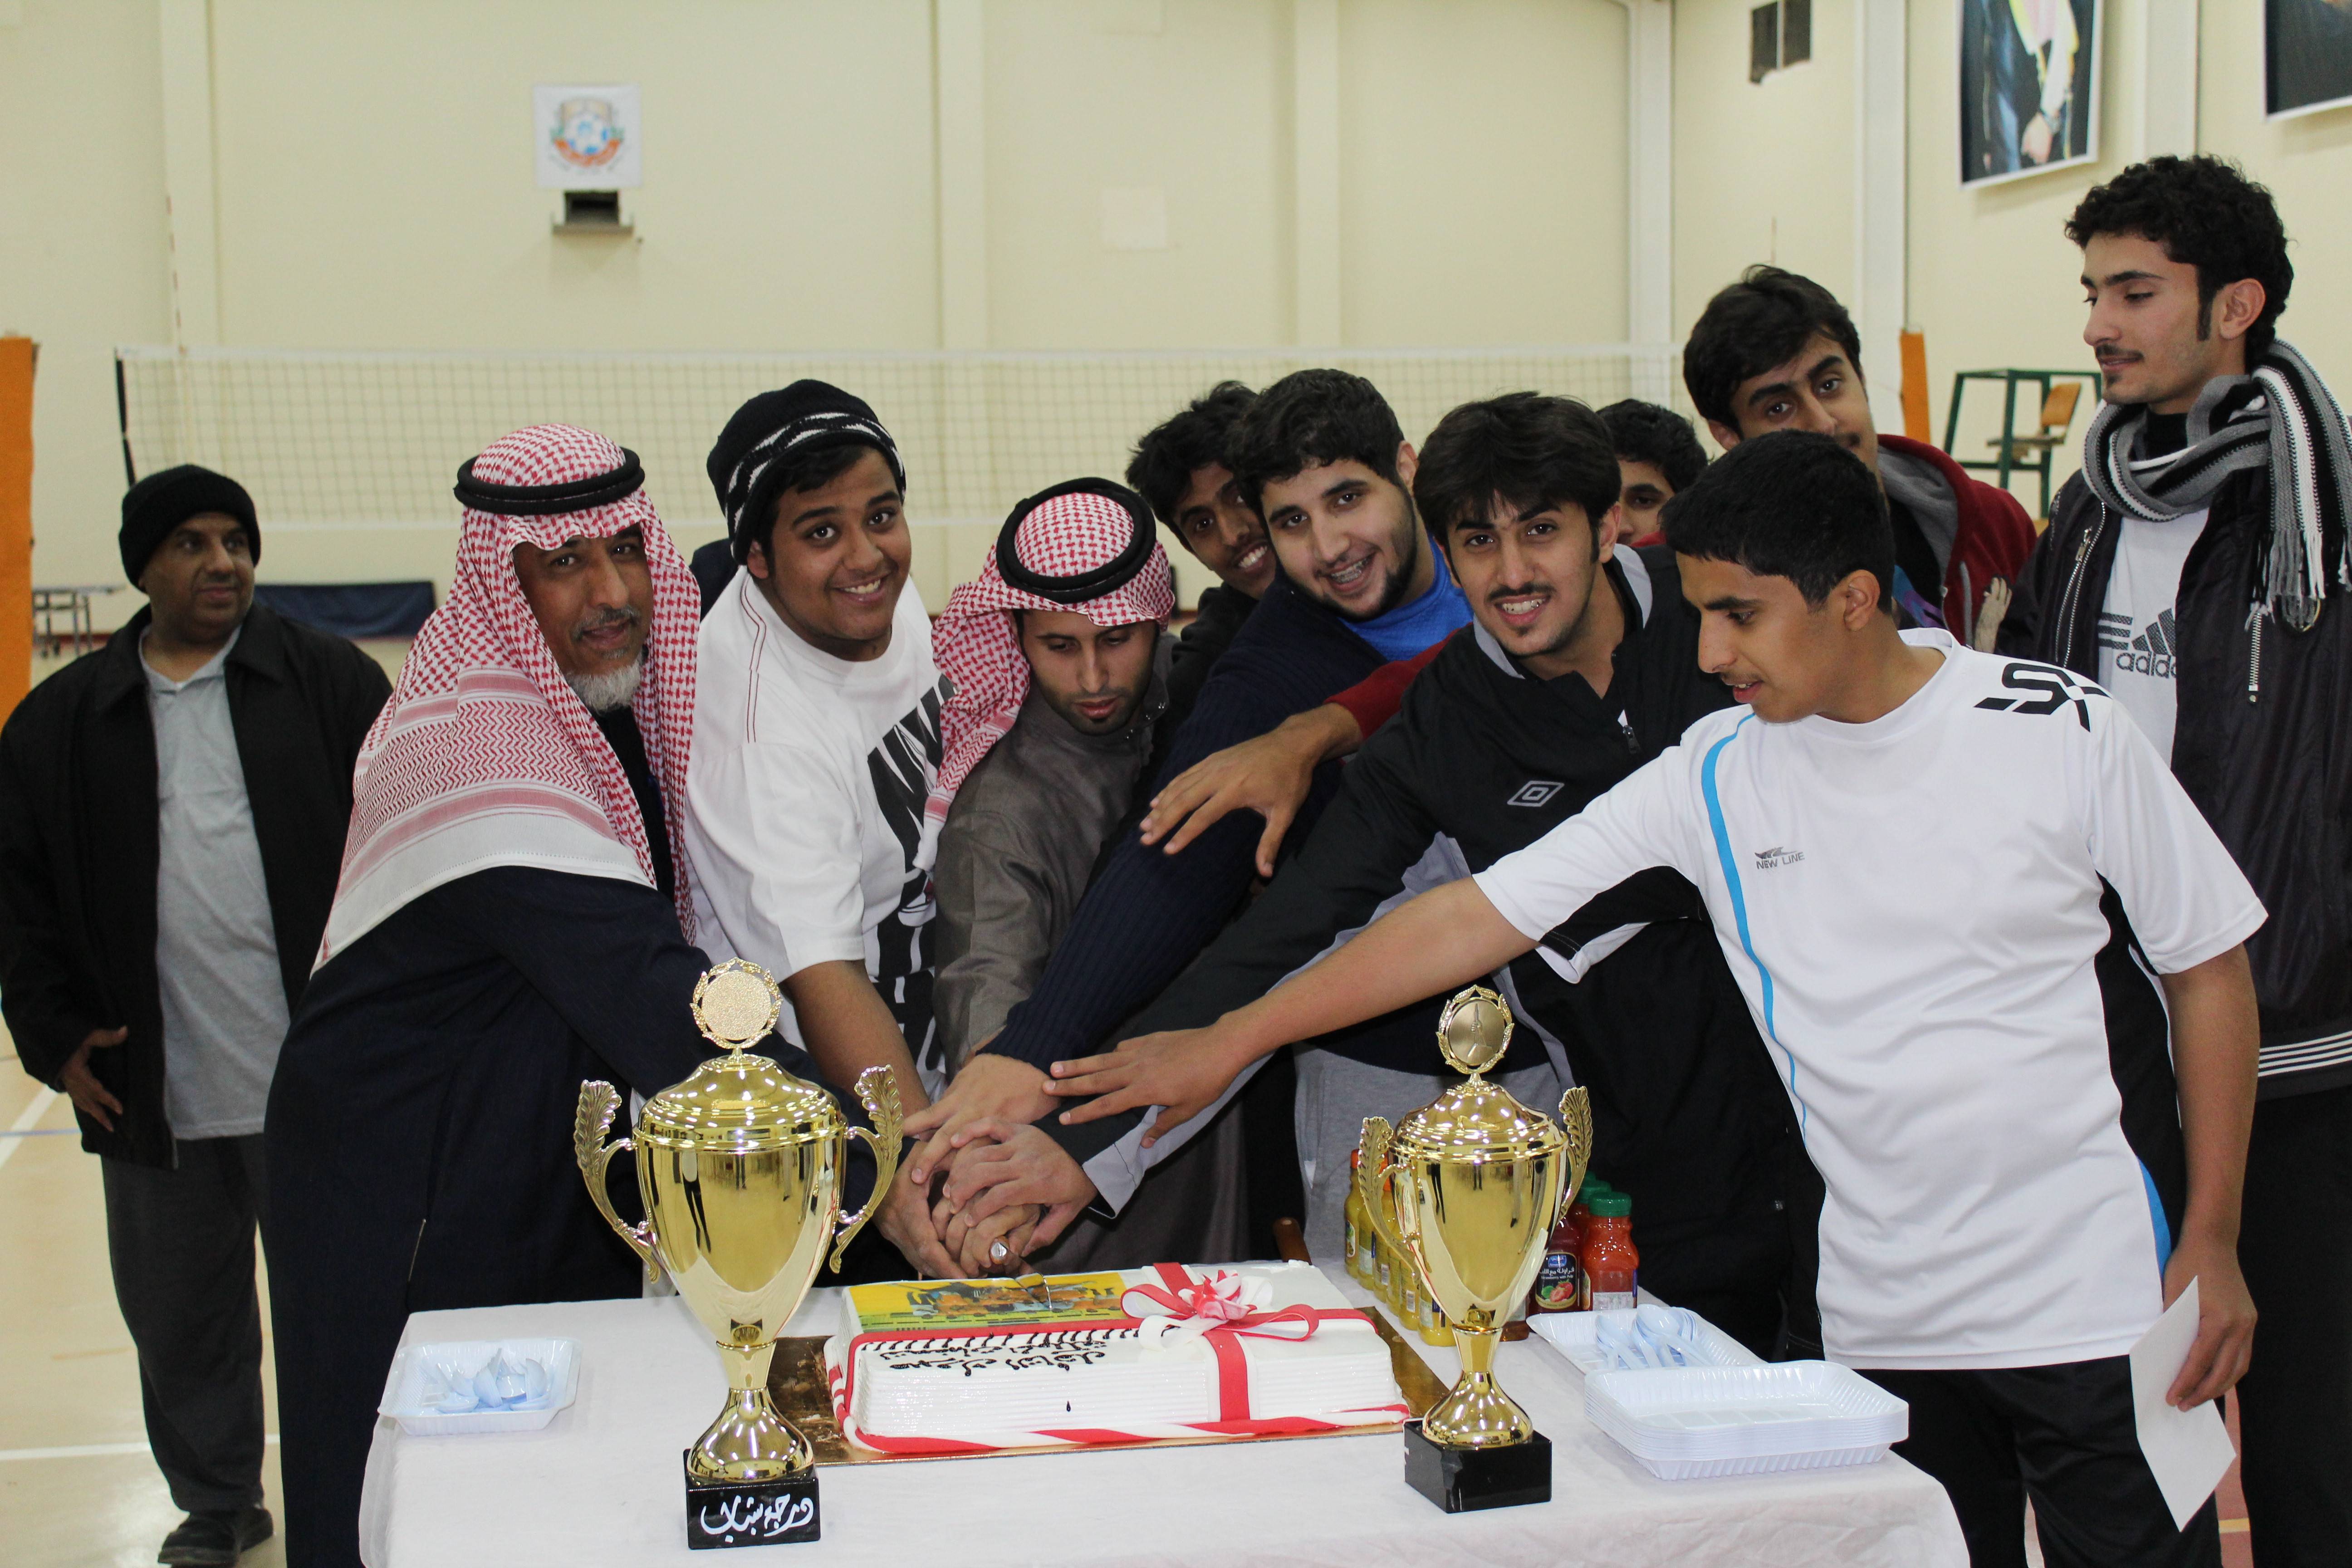 صورة نادي الحي يقيم حفل لفريق كرة الطائرة بنادي أشيقر